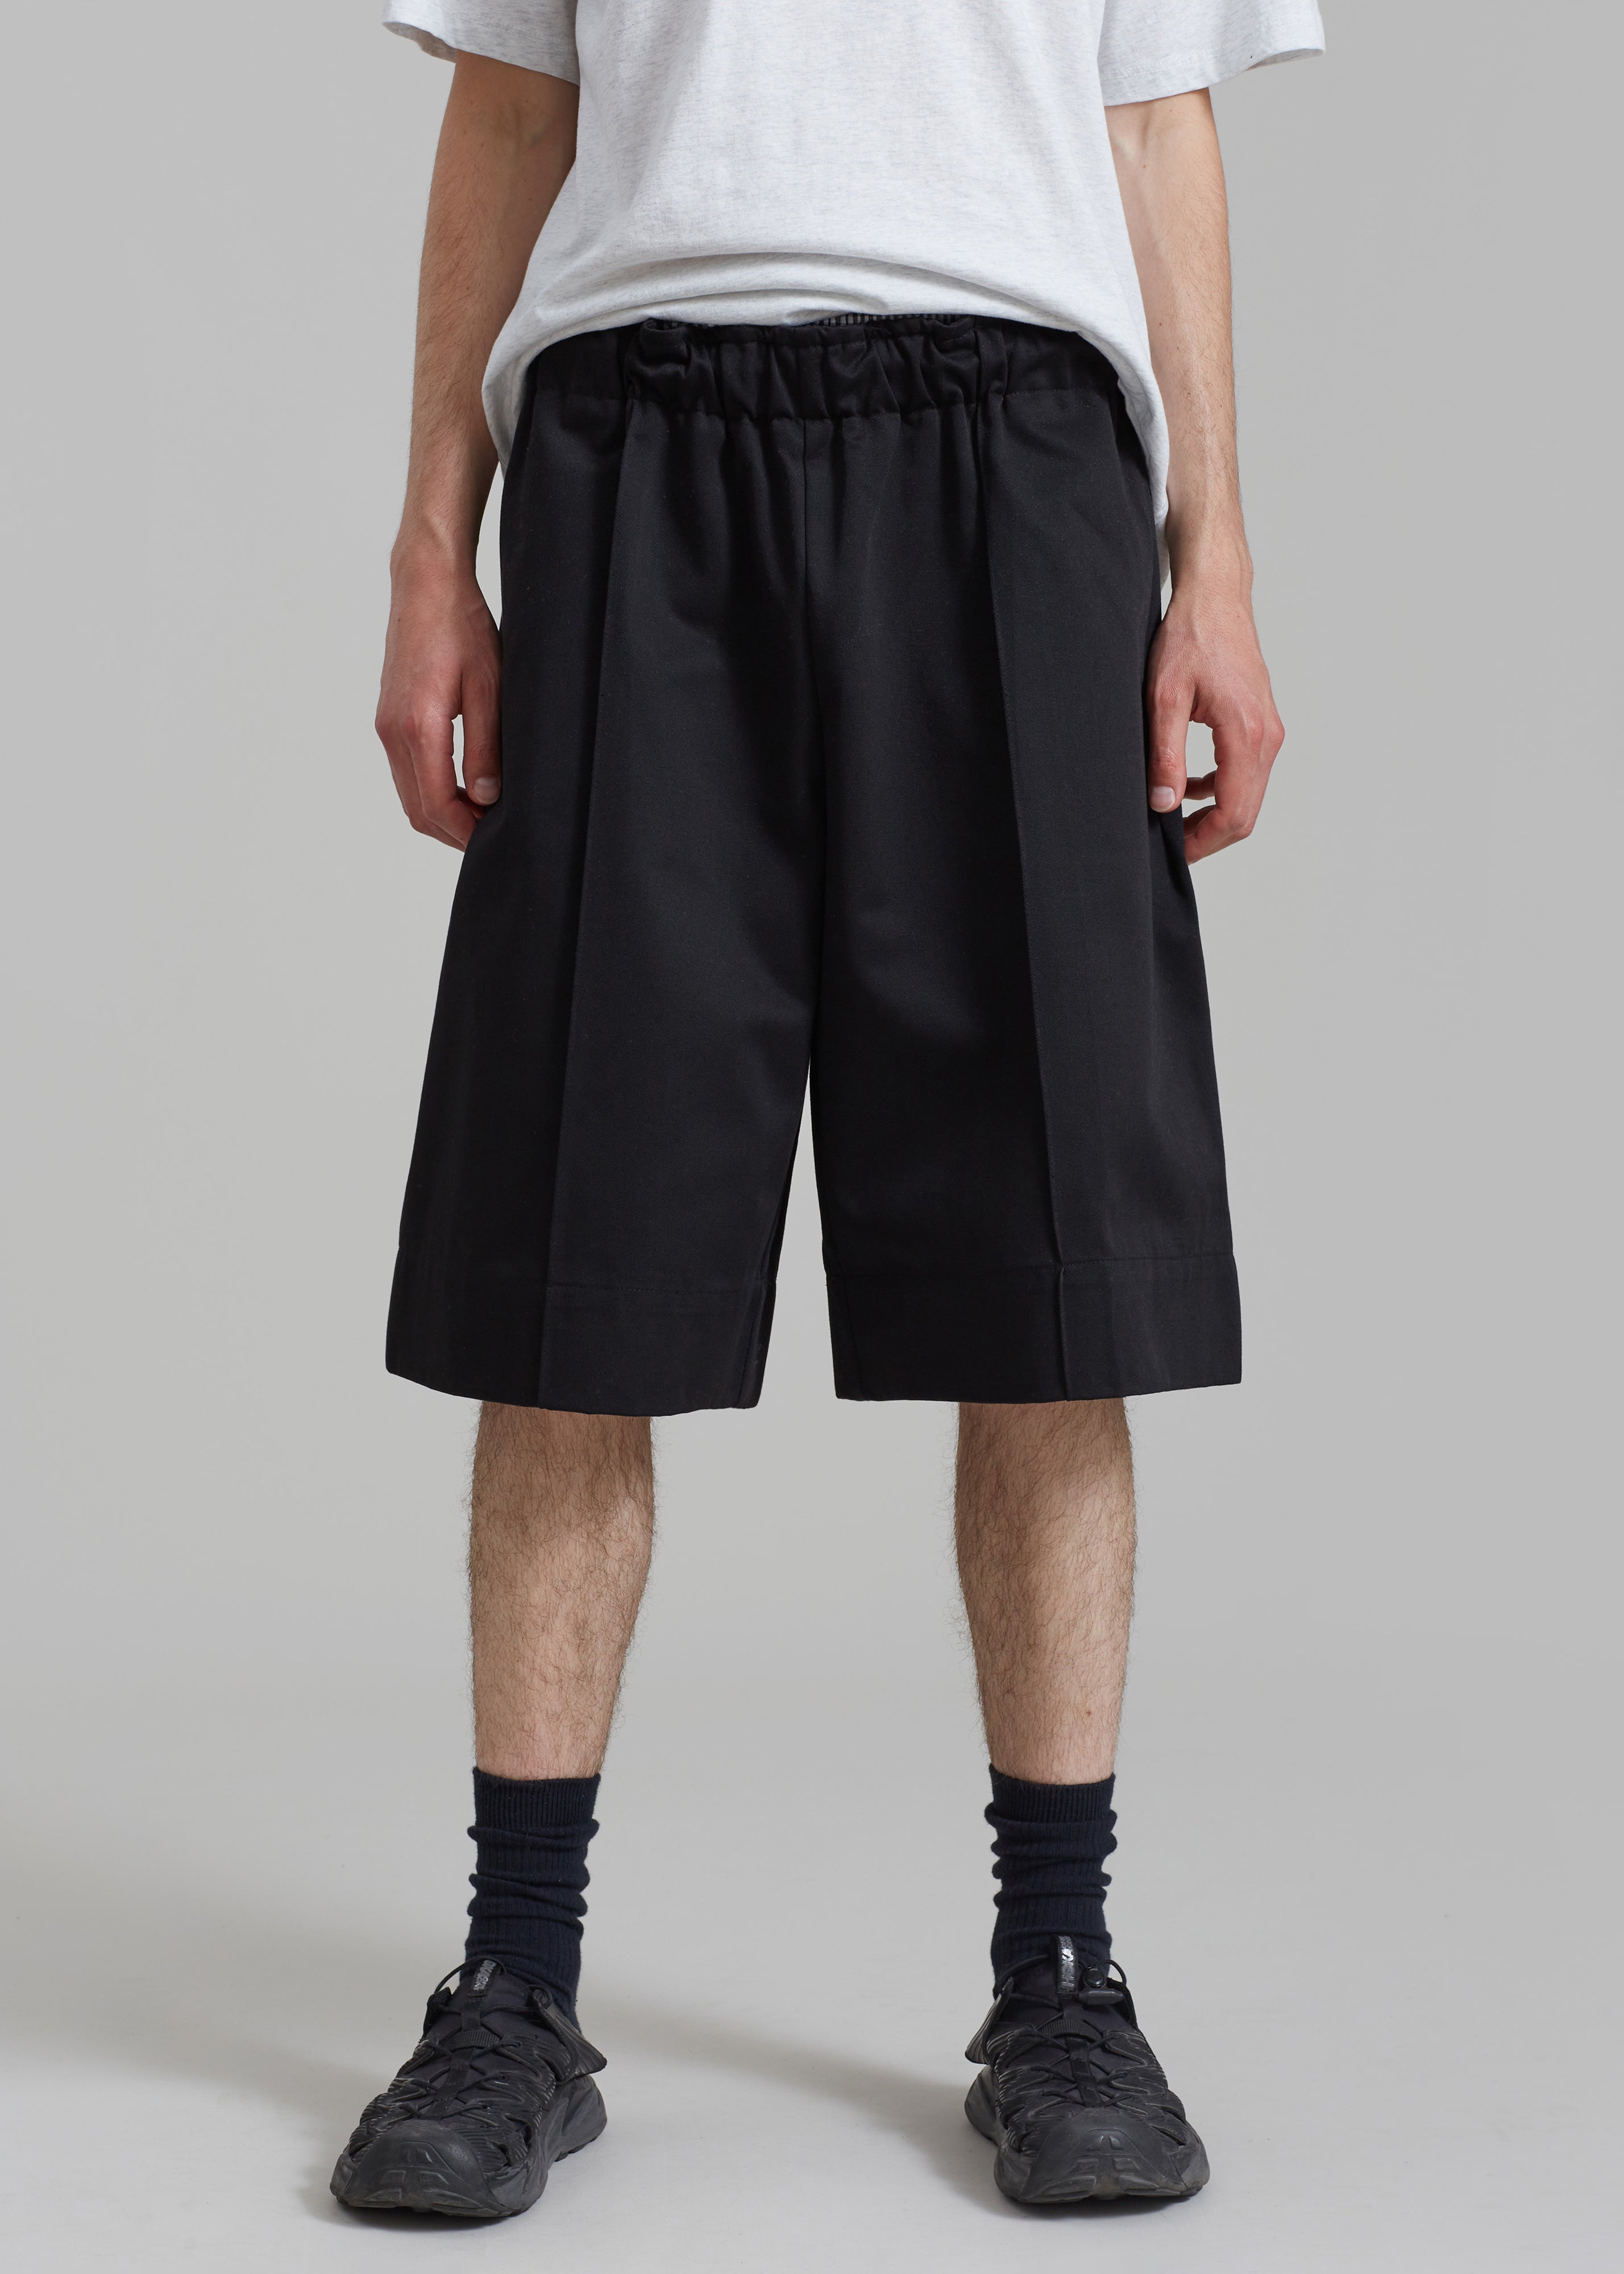 Adan Bermuda Shorts - Black - 4